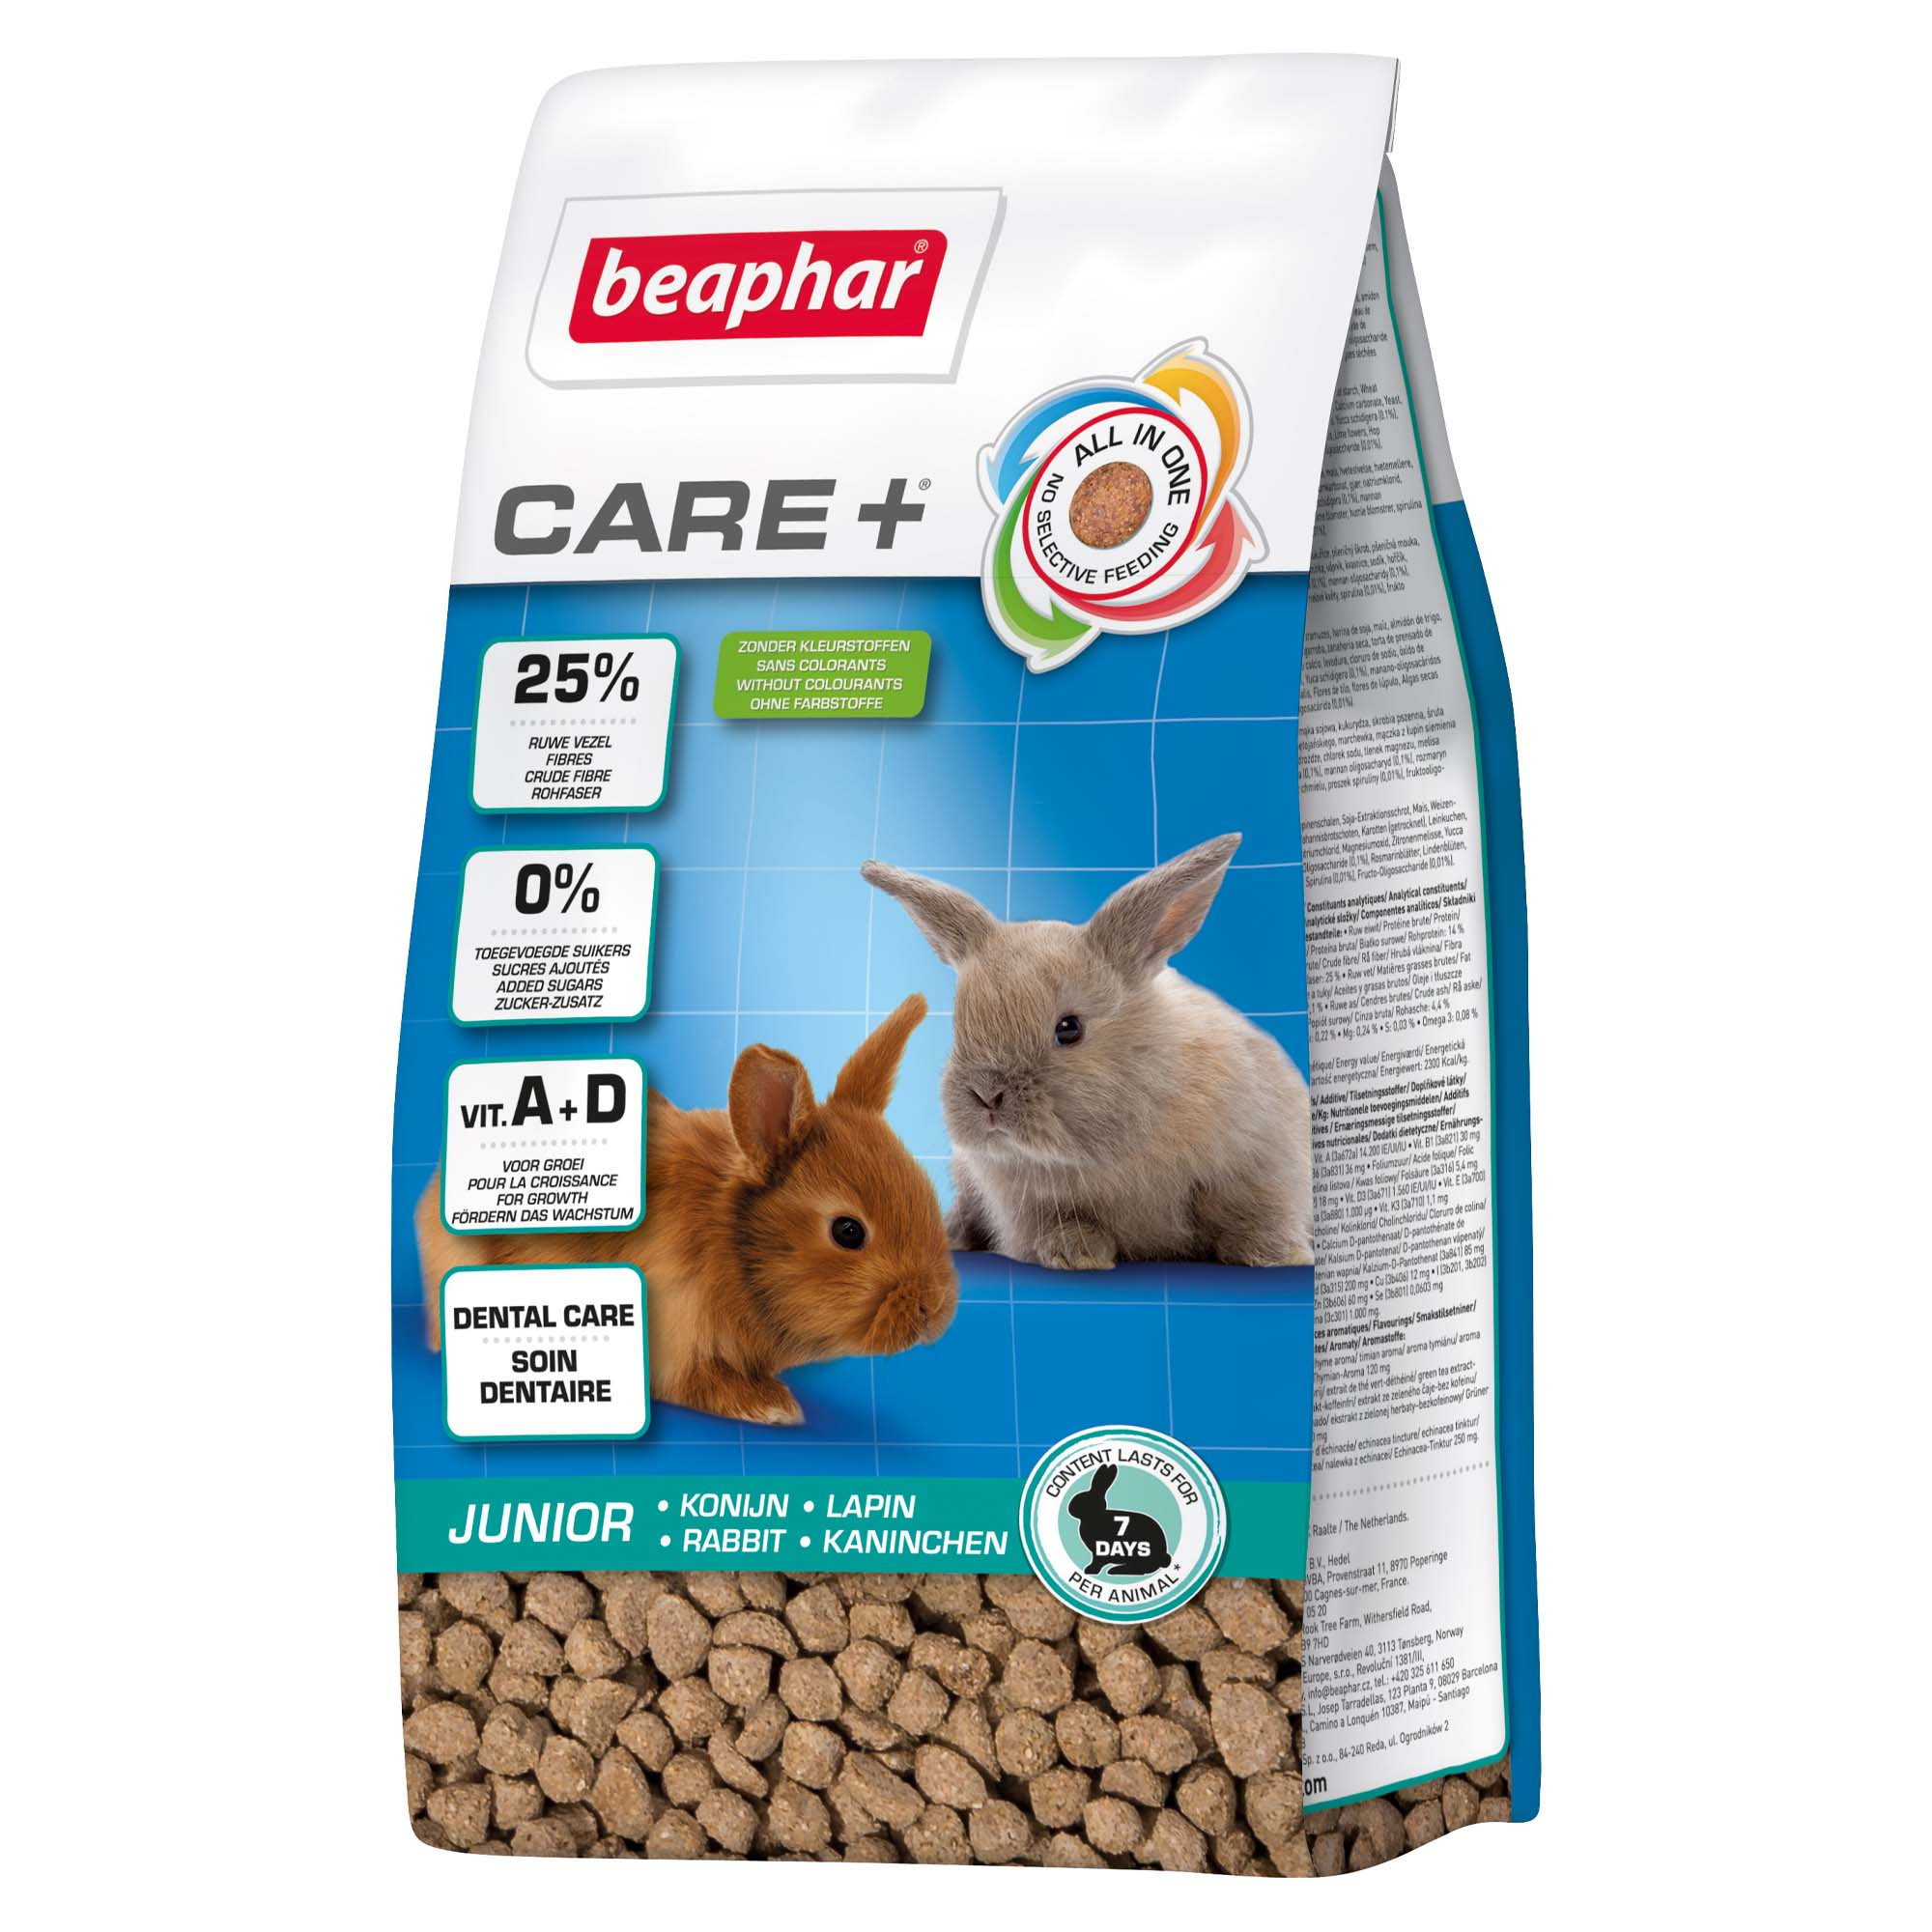 Beaphar Care+ extrudiere Futter für Jung Kaninchen